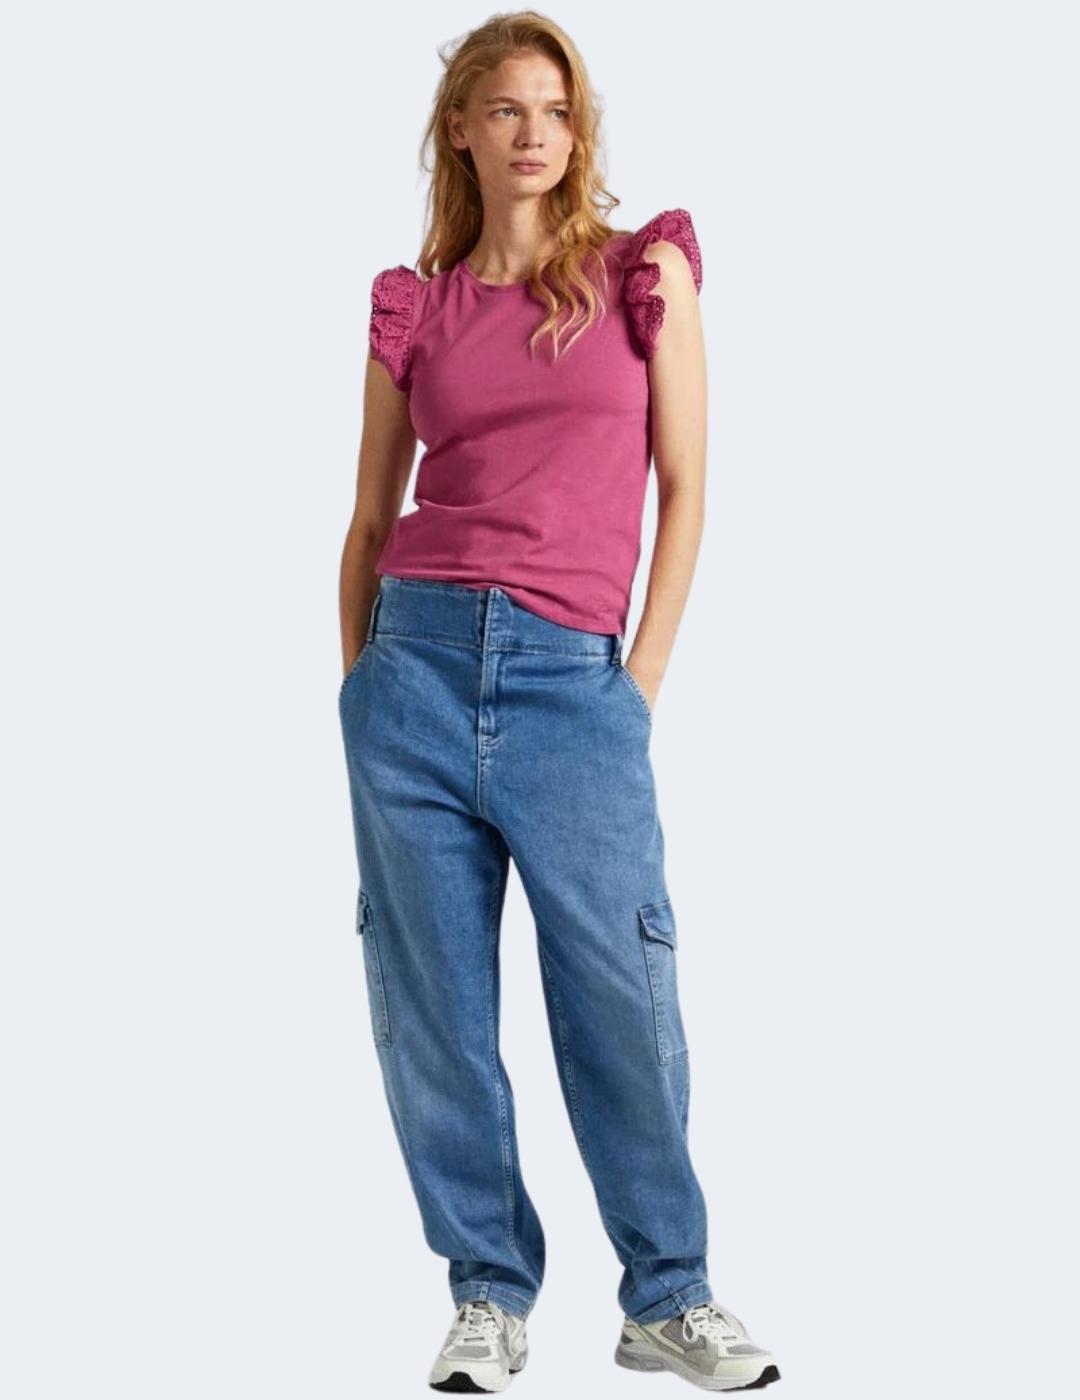 Camiseta Pepe Jeans Mujer Lindsay Rosa